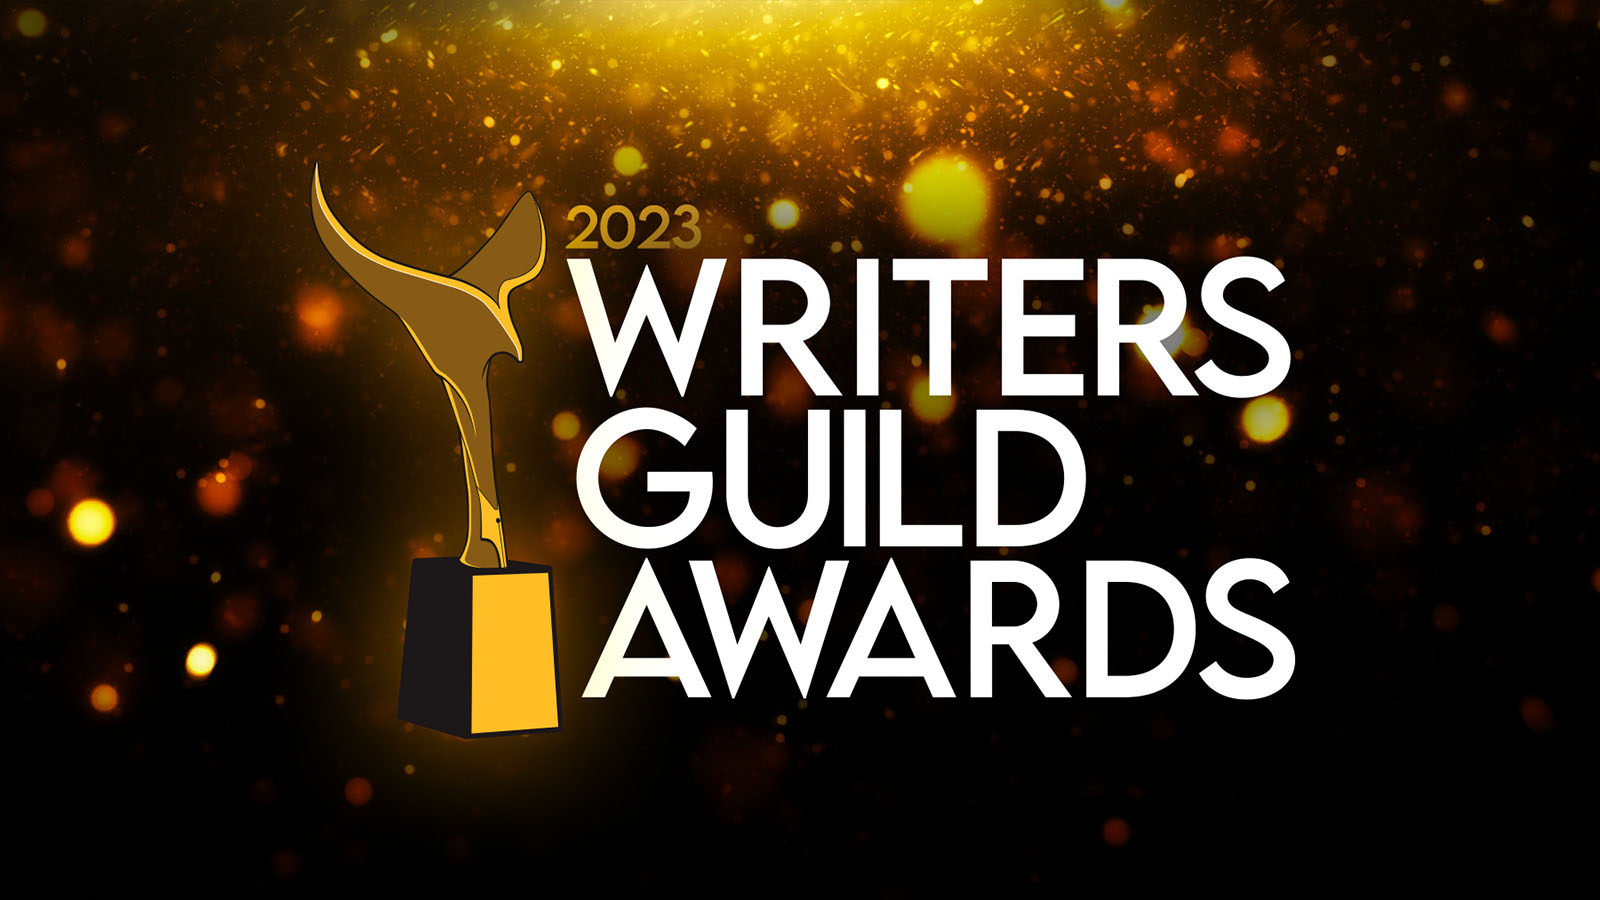 2023 Writers Guild Awards Timeline